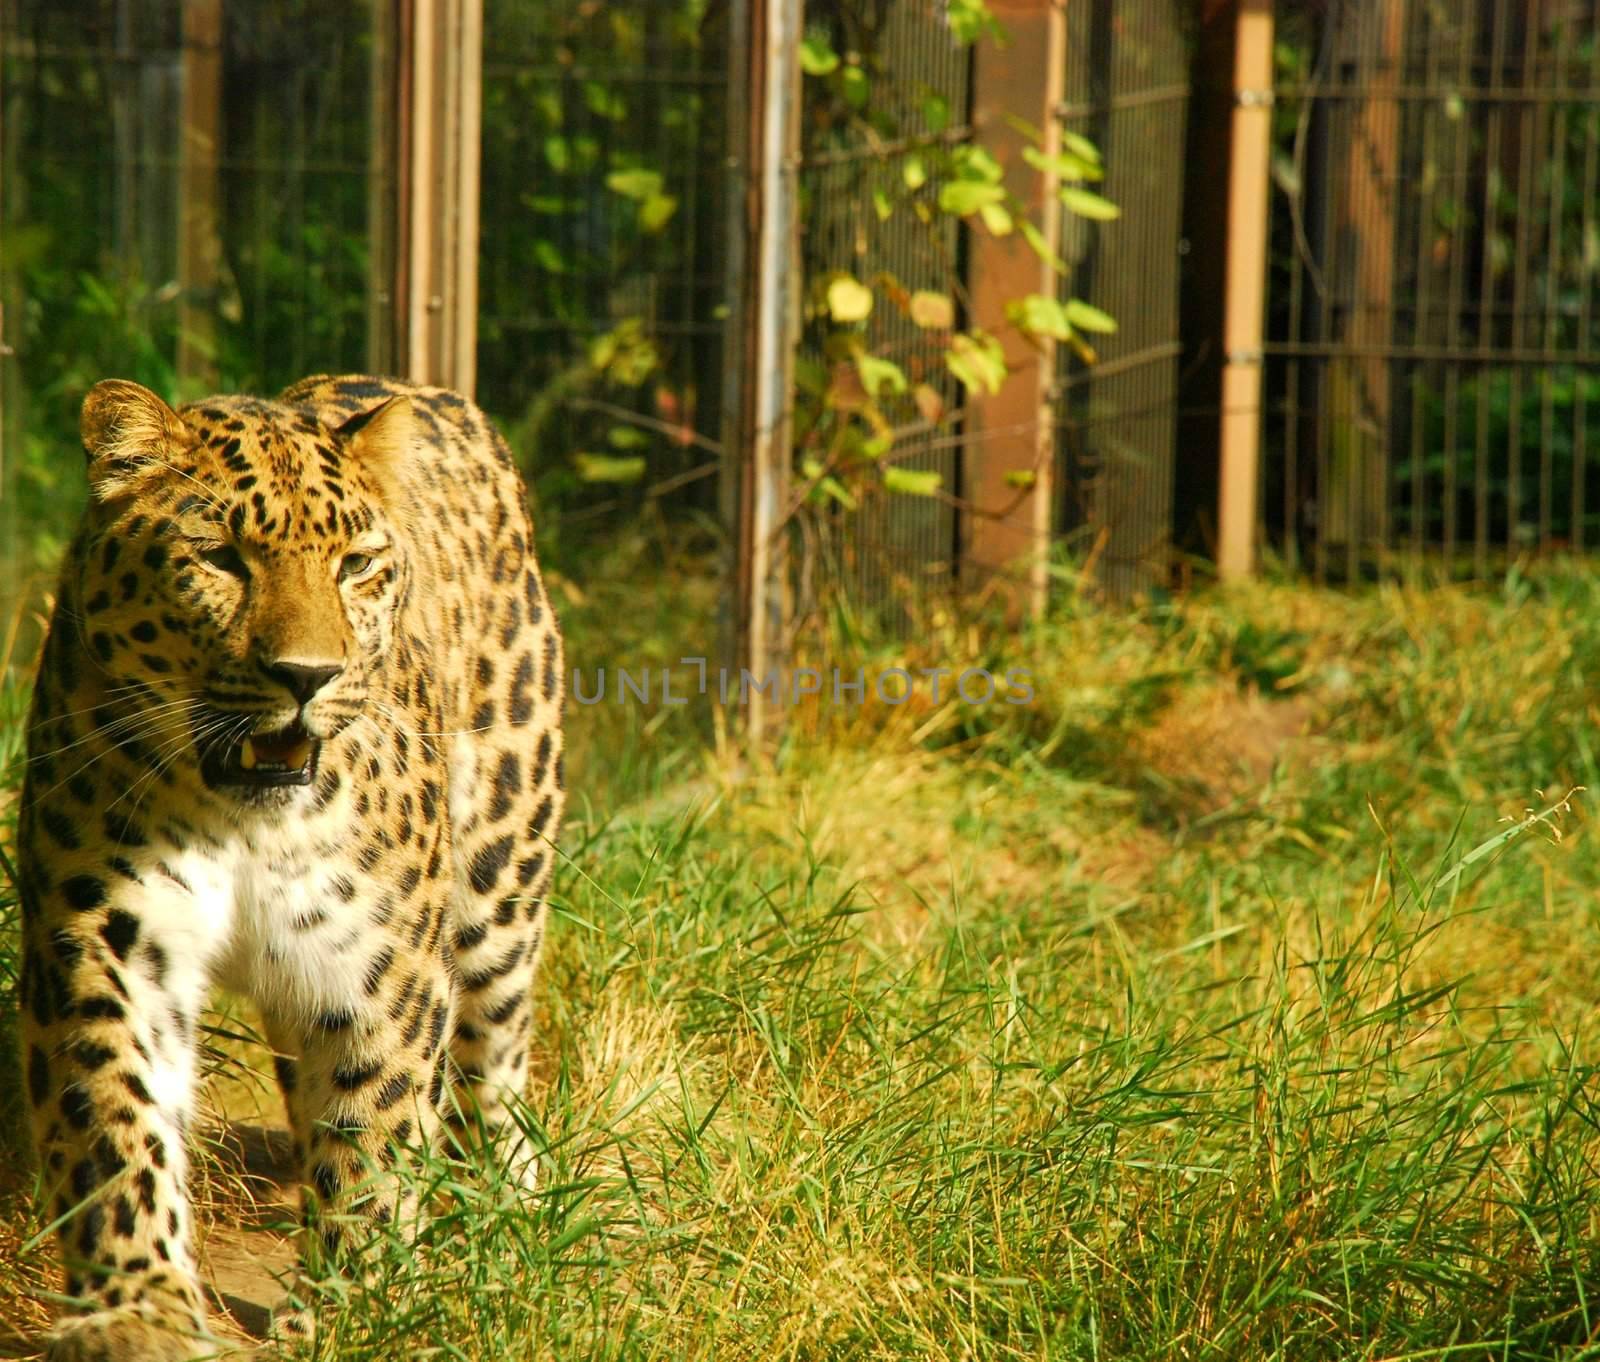 Cheetah by dariya64